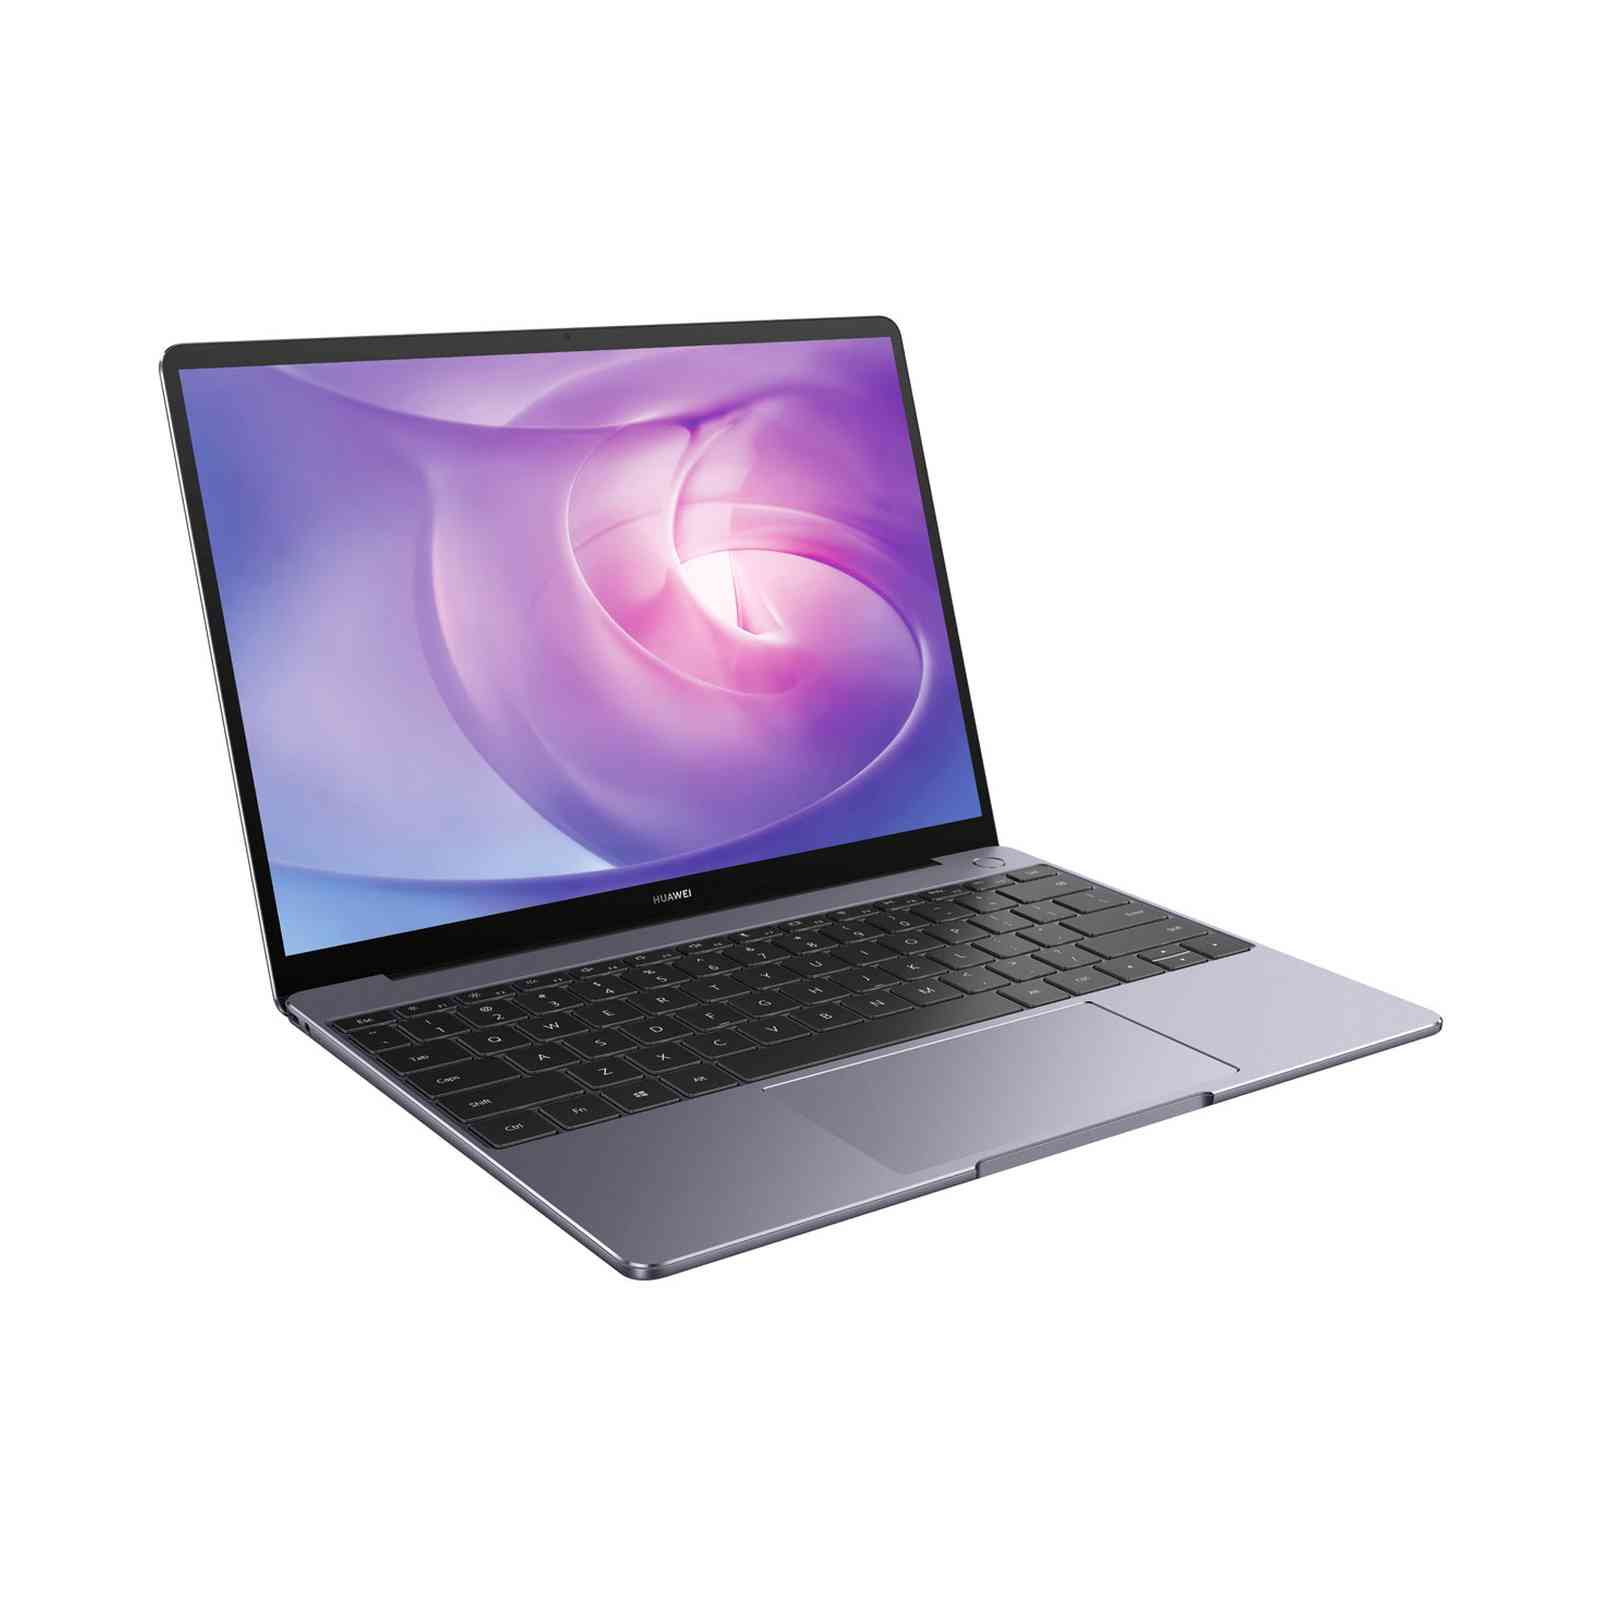 Huawei Matebook 13 i5-10210U - Laptop Tiangge